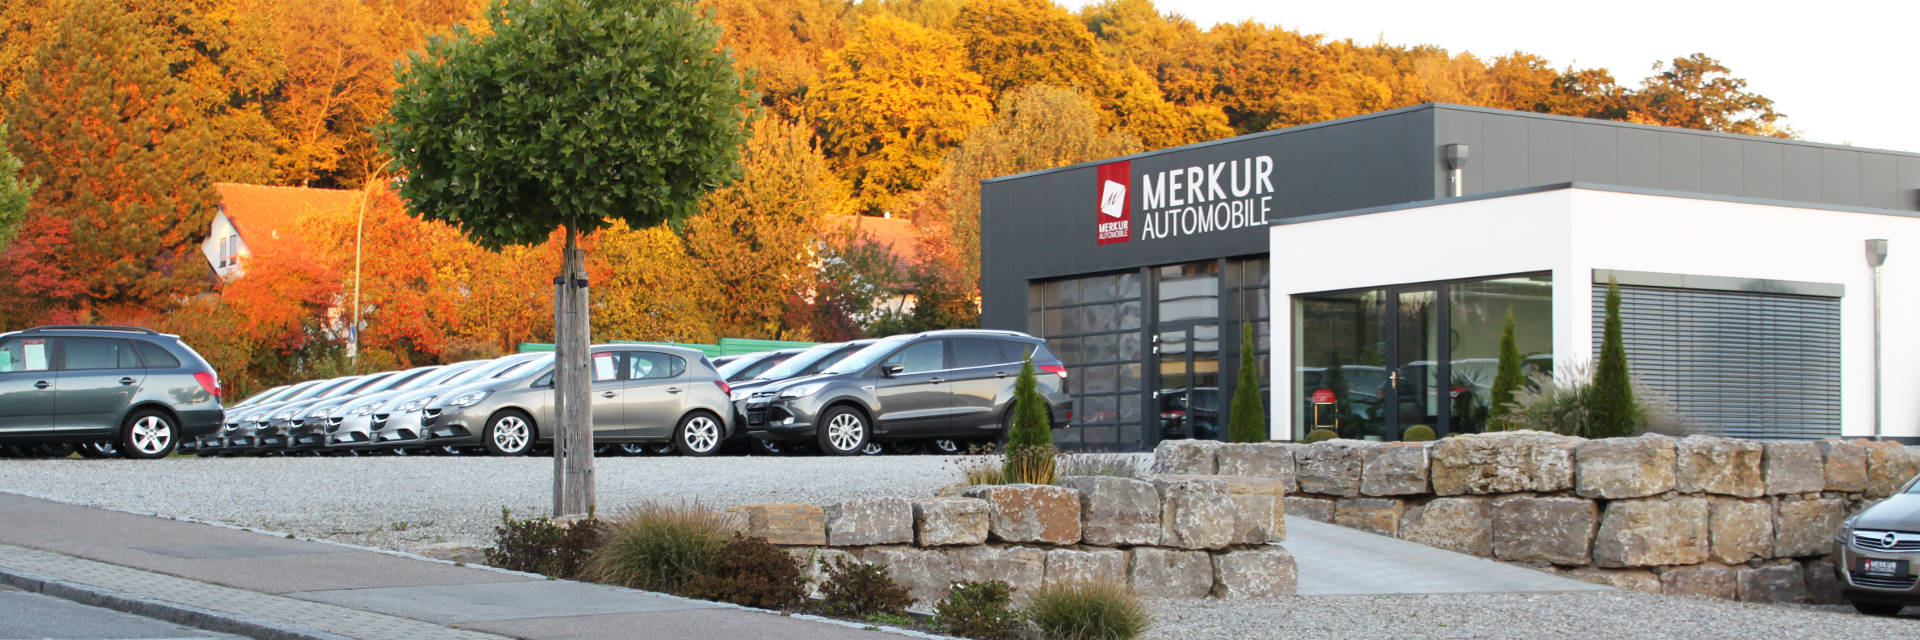 Merkur Automobile | Gebraucht- und Jahreswagen